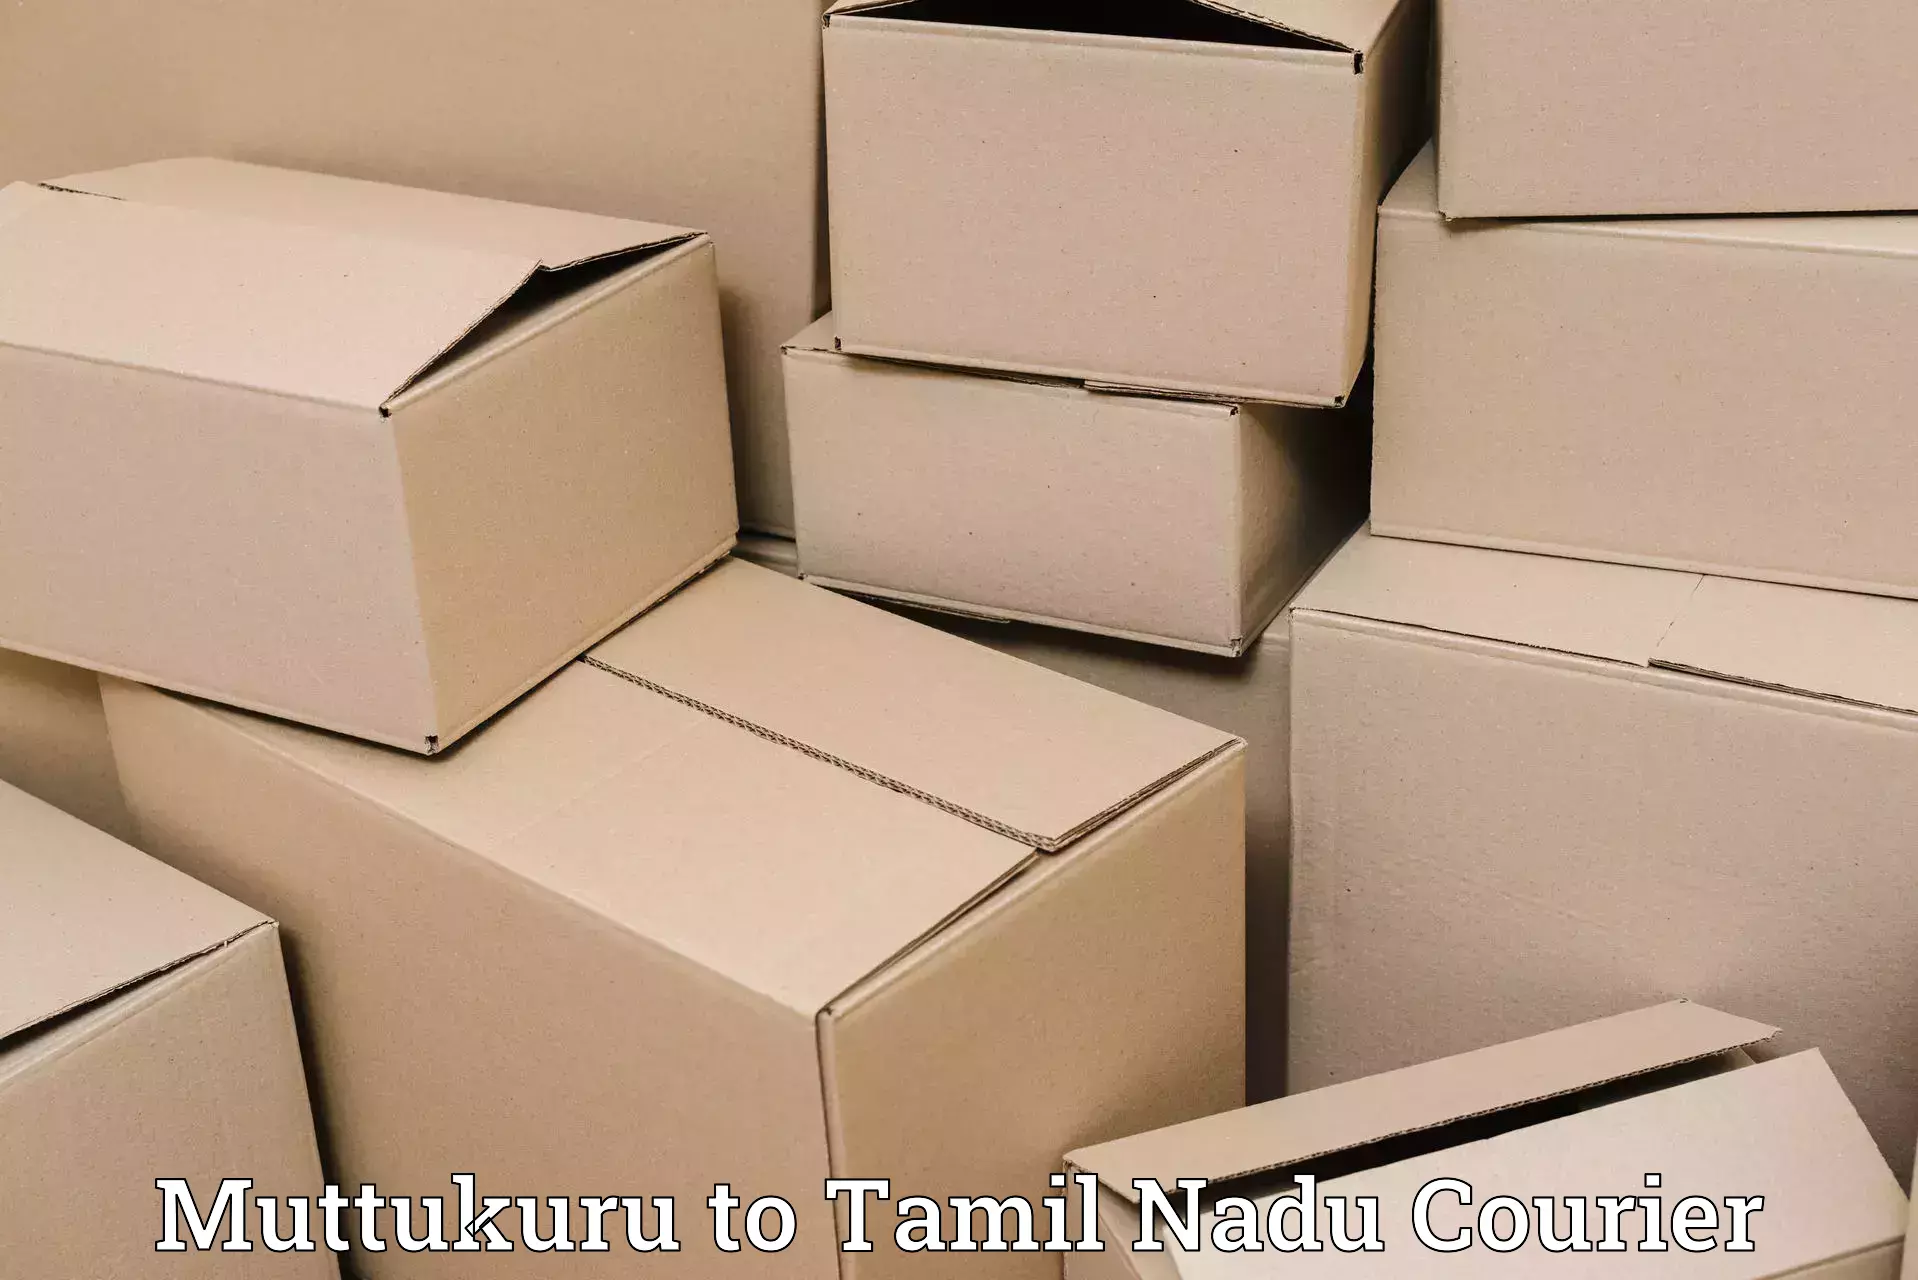 Seamless shipping experience in Muttukuru to Amrita Vishwa Vidyapeetham Coimbatore